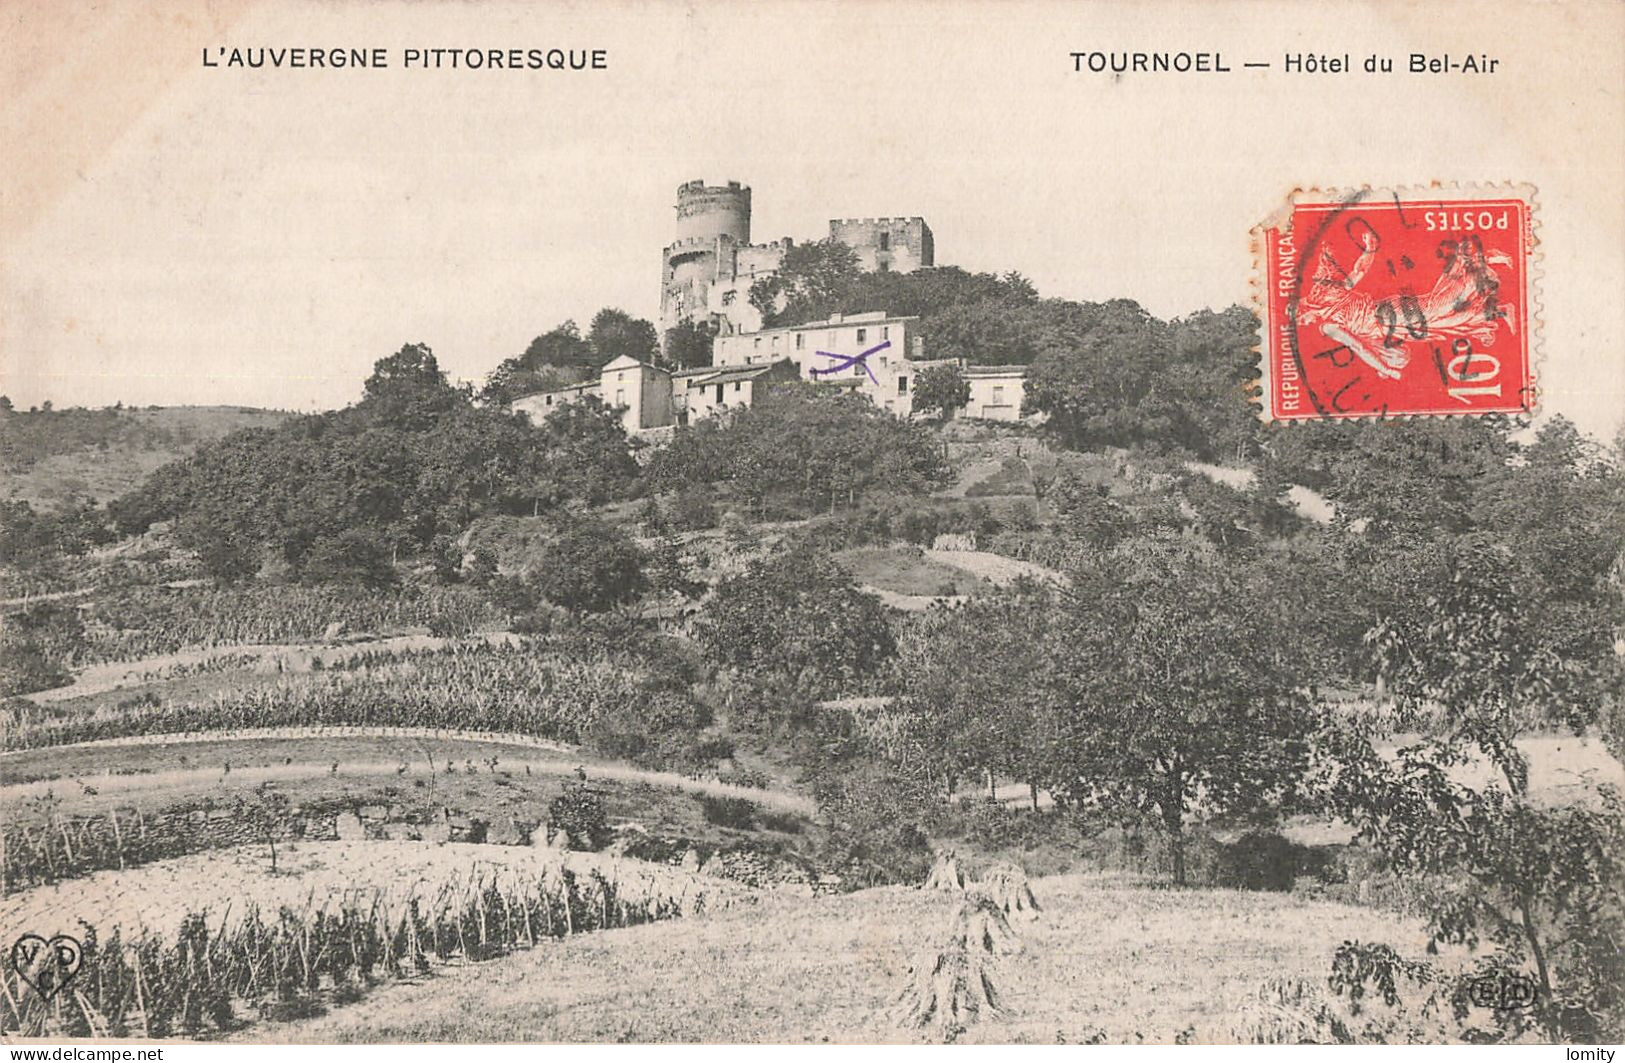 Destockage lot de 32 cartes postales CPA Auvergne Clermont Ferrand la Bourboule Royat Chatelguyon Mont Dore